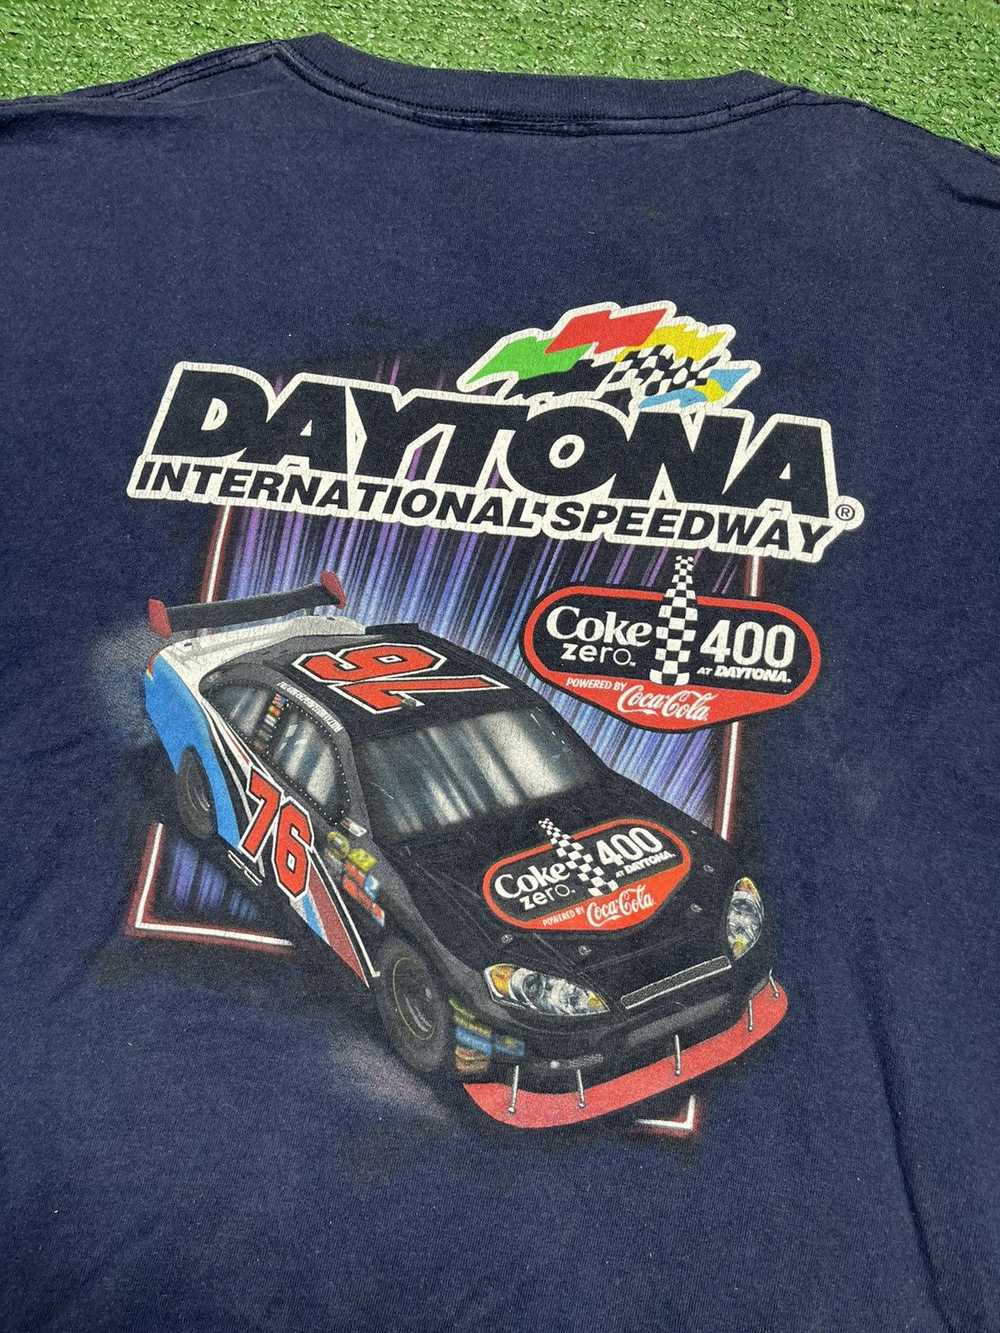 NASCAR Vintage NASCAR T-shirt - image 4